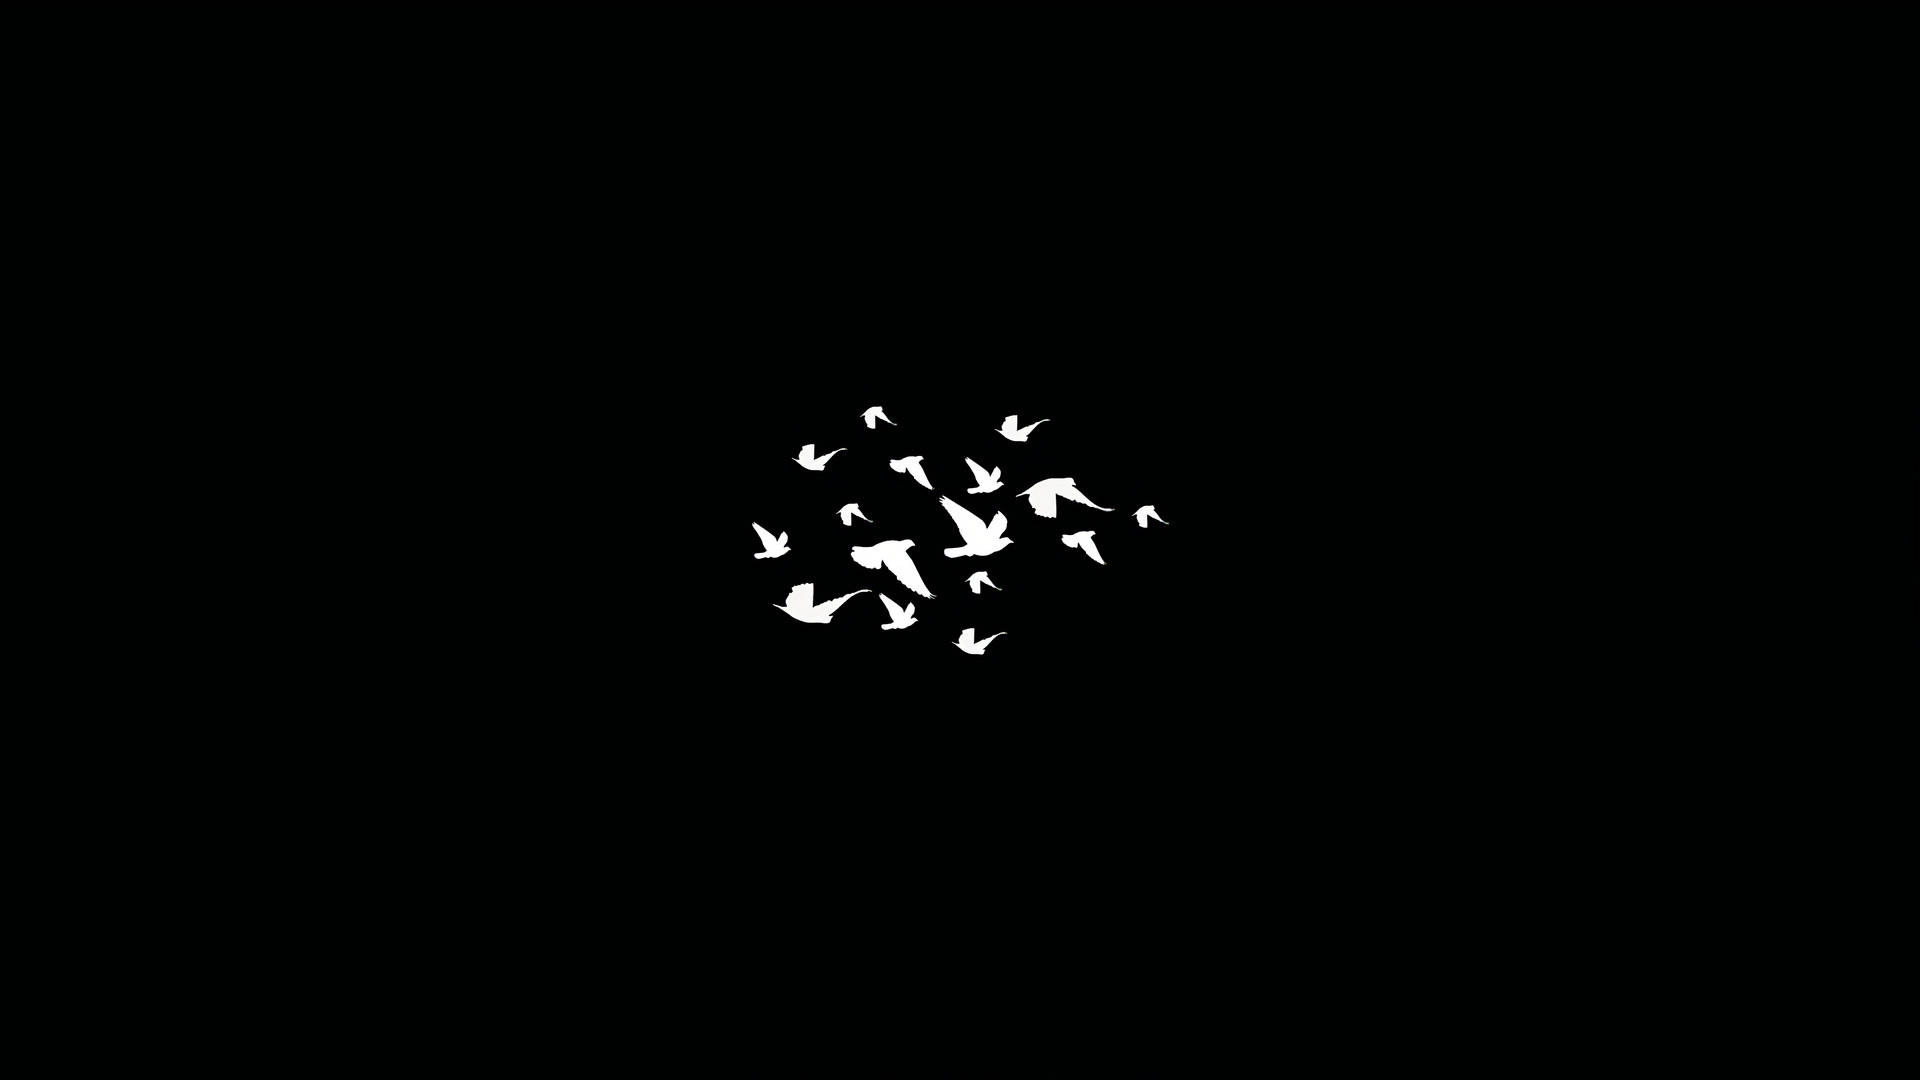 Dark Laptop Birds Compressed In The Center Background